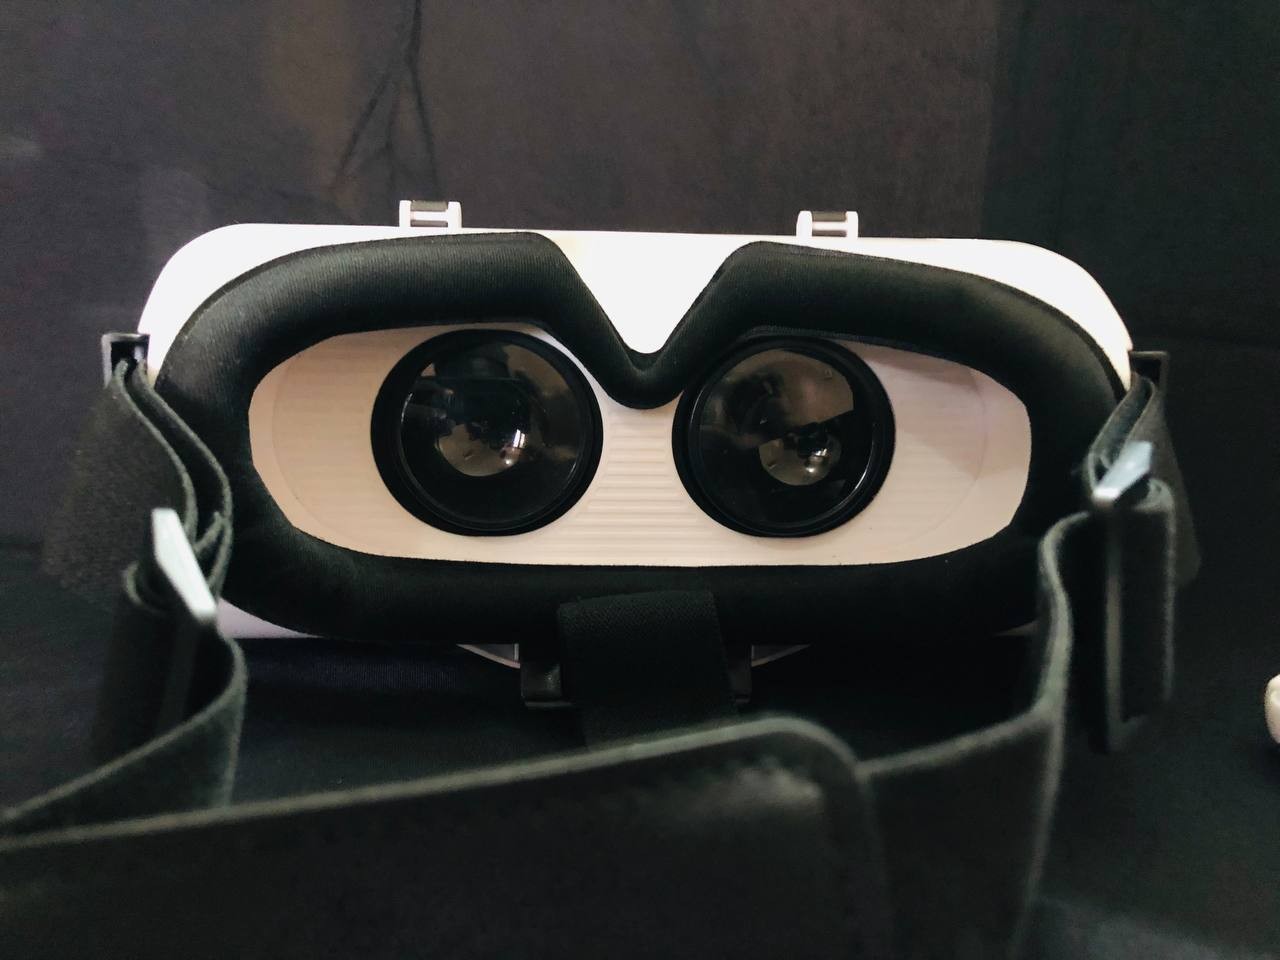 نظاره الواقع الافتراضي 3D لمشاهده ممتعه واستمتع بالالعاب